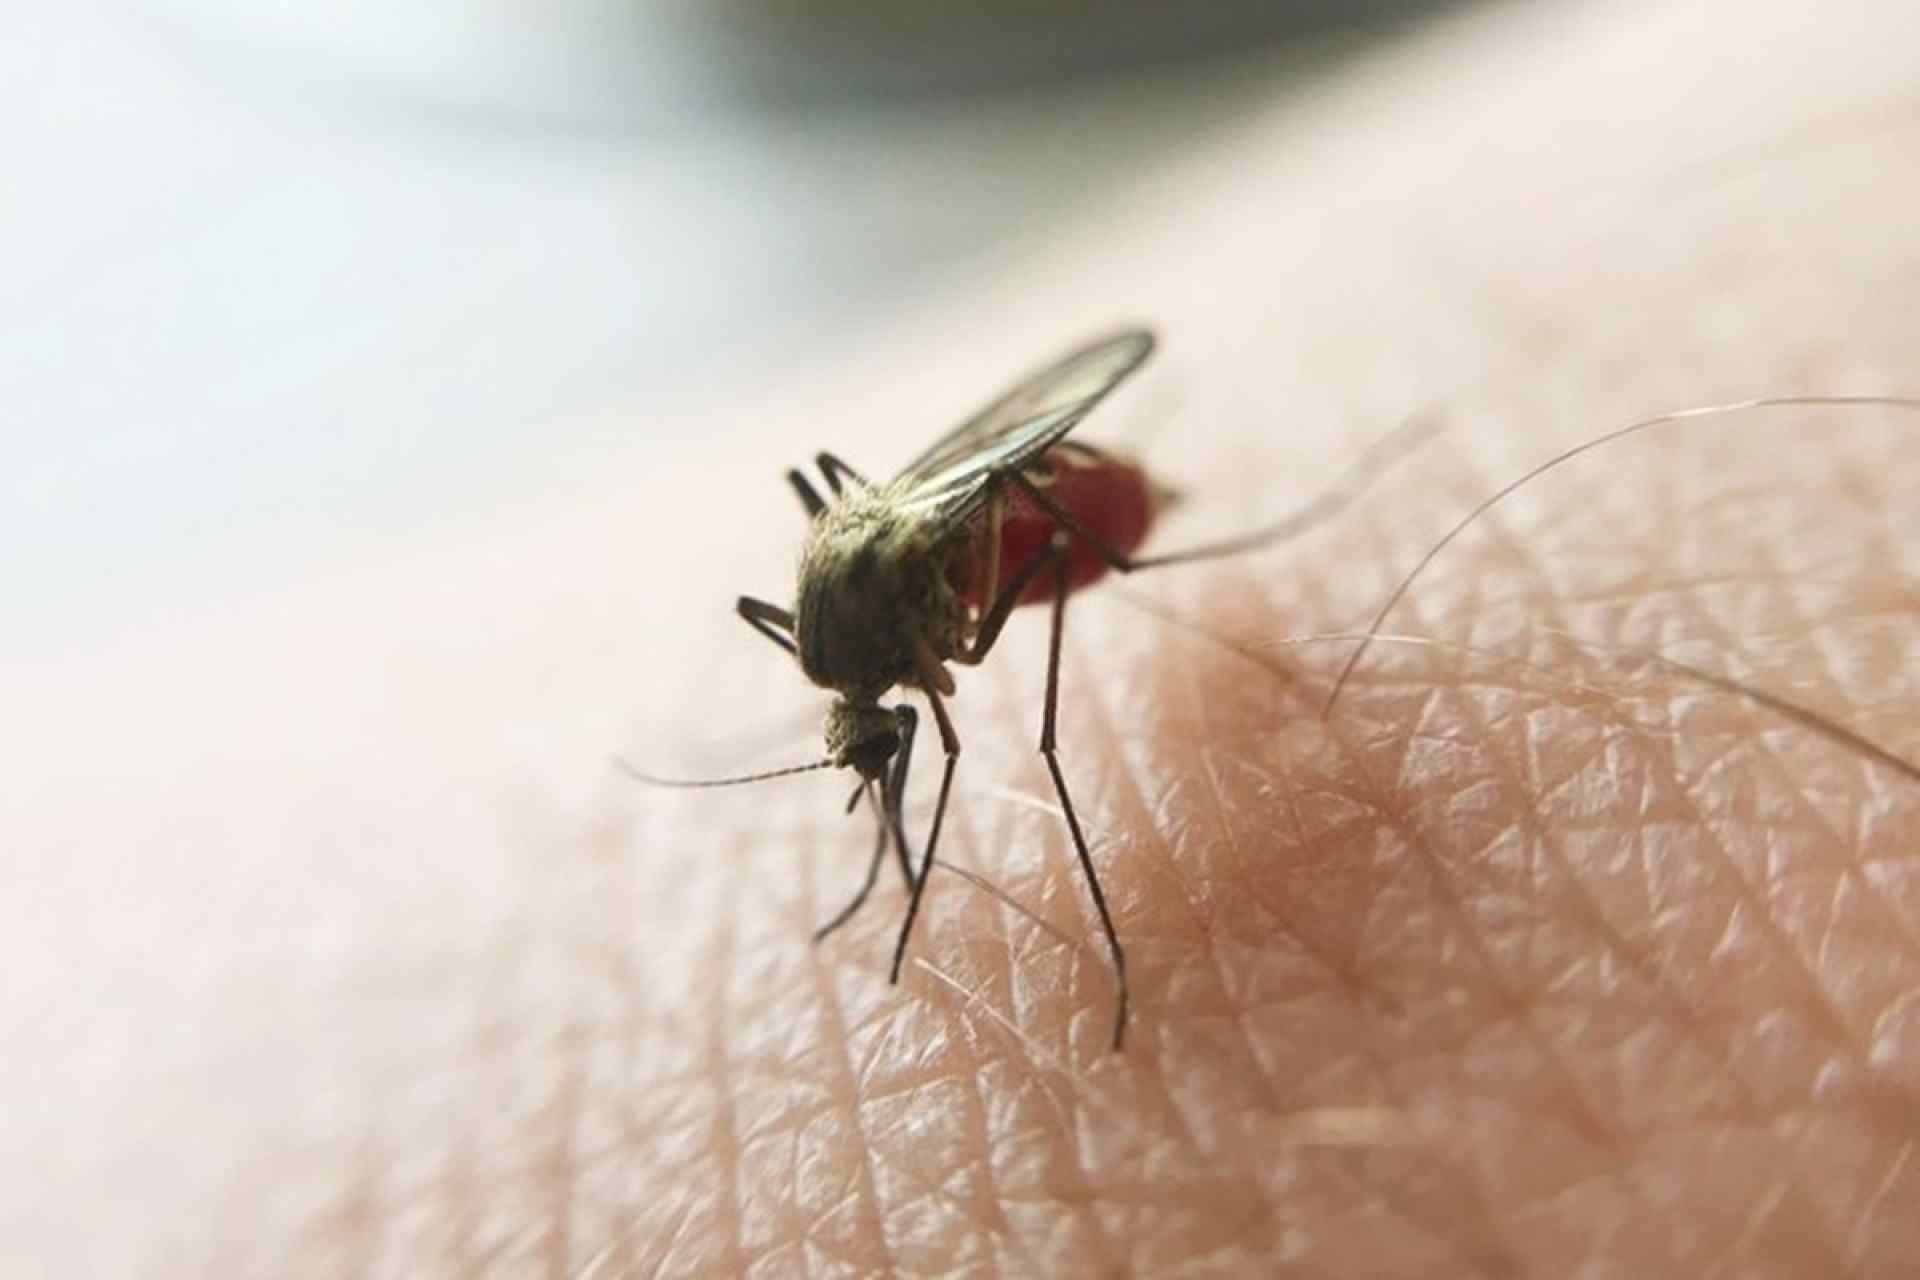 EUA voltam a registrar casos de malária após 20 anos e emitem alerta de saúde